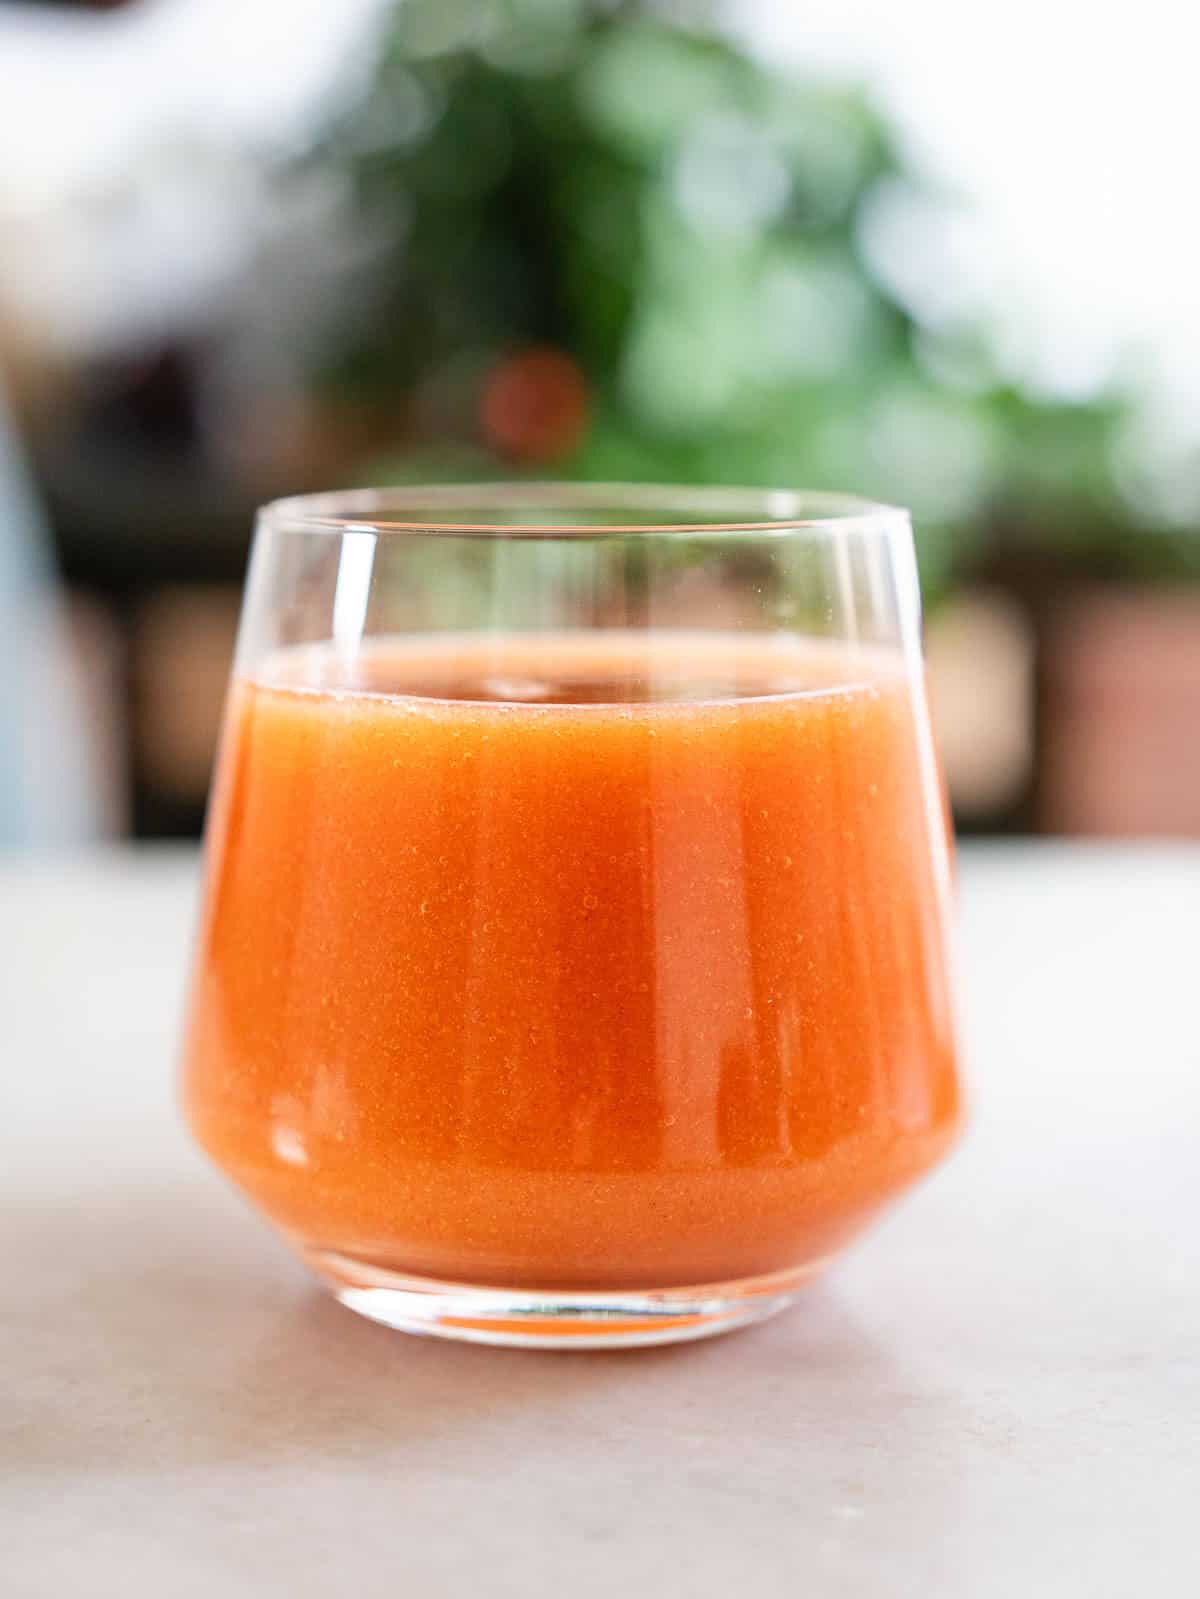 plum juice, juicer method.